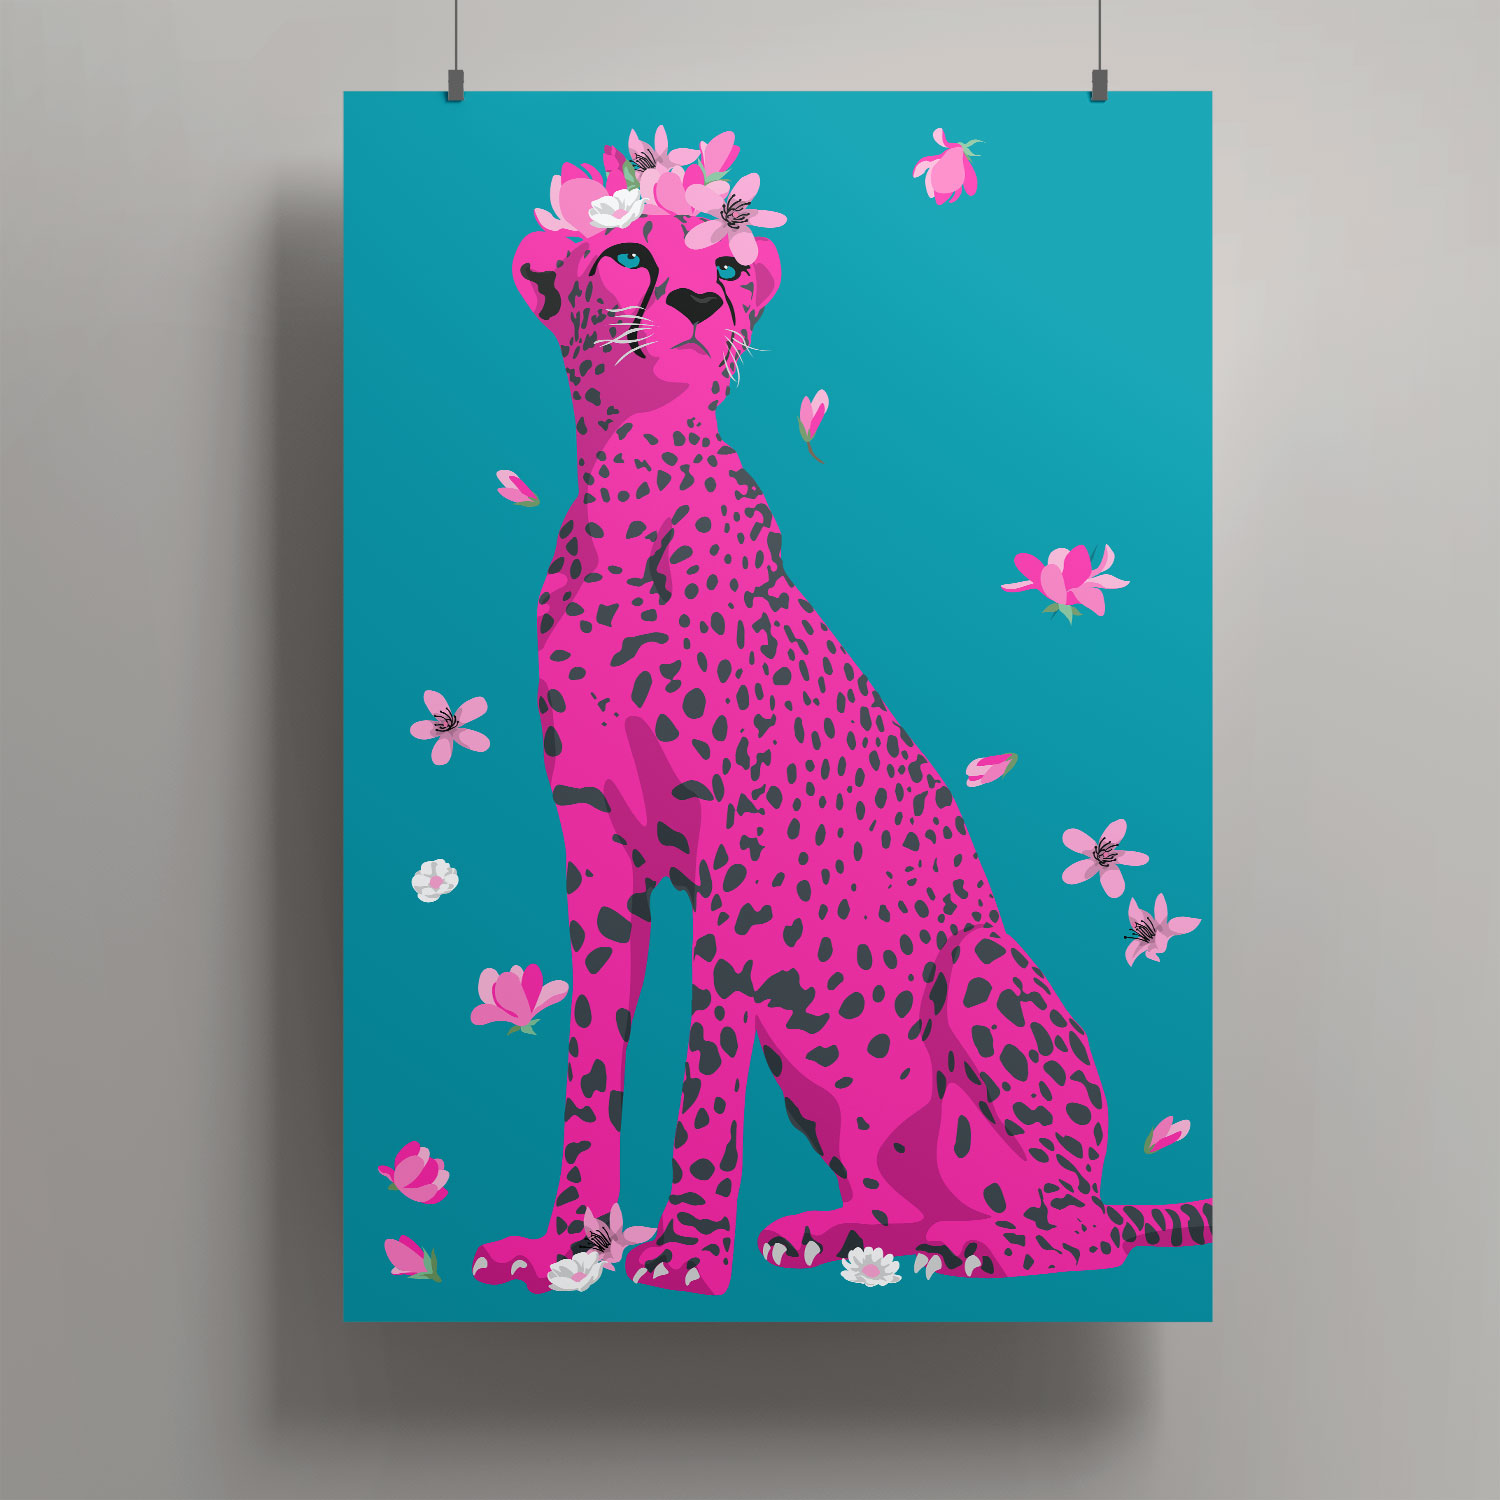 Artprint A3 - Leopard